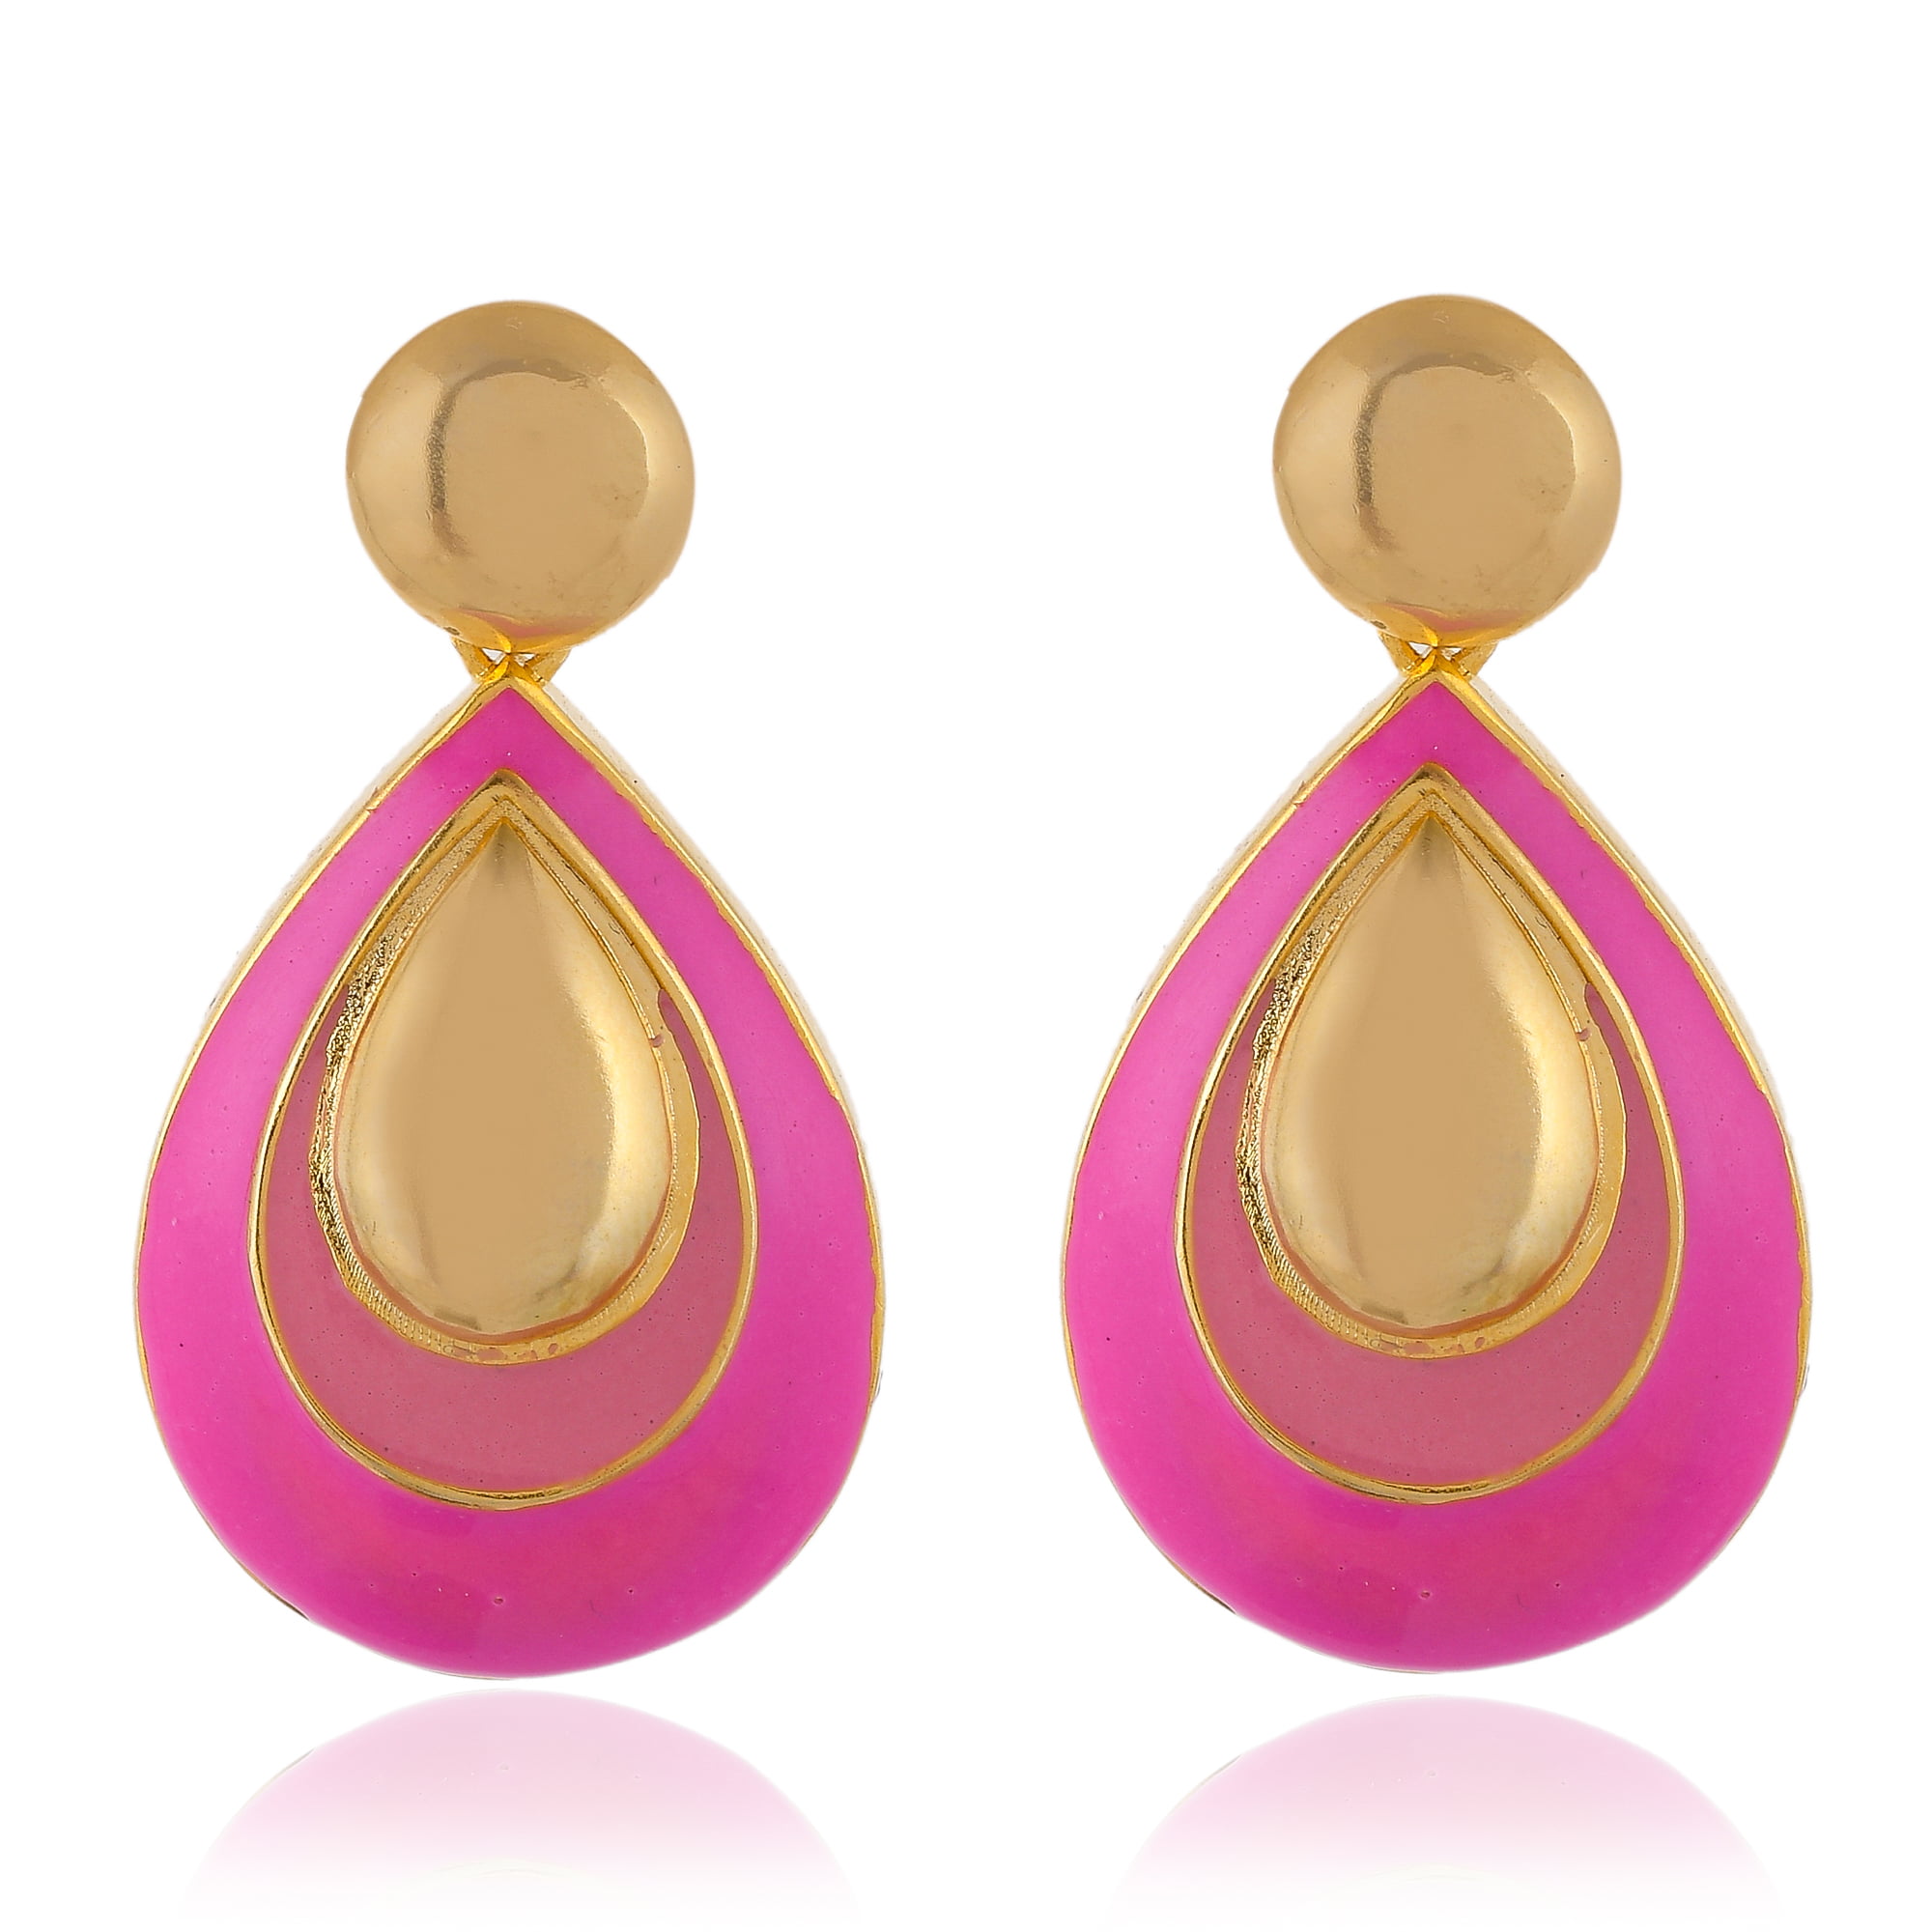 Eran Fashions Heart Hoop Earrings Love Enamel Gold Star Dangle Earrings for Women Girls in Gift Box 